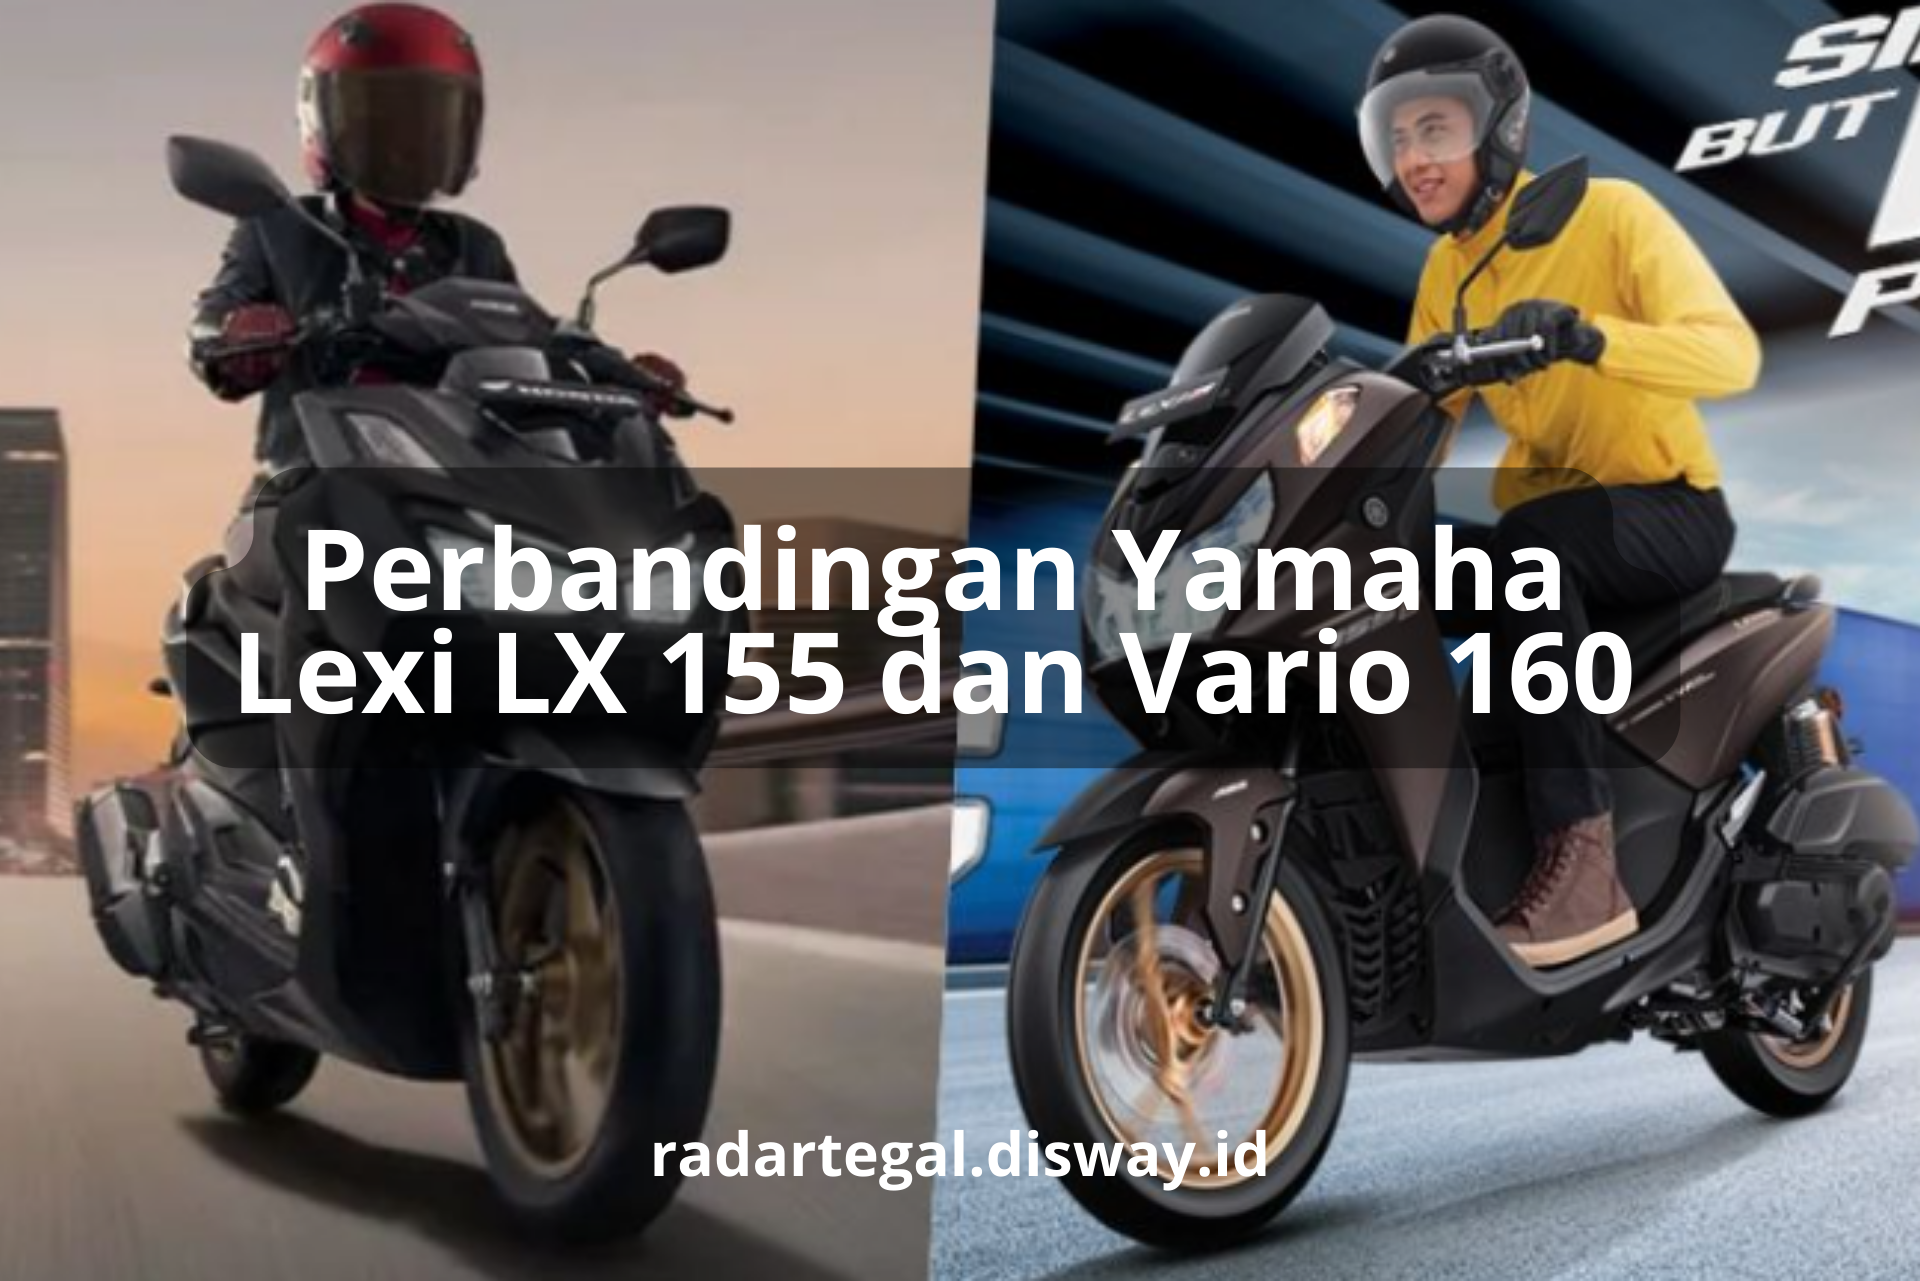 Perbandingan Yamaha Lexi LX 155 dan Vario 160, Duel Skutik Berteknologi Blue Core yang Bikin Keder